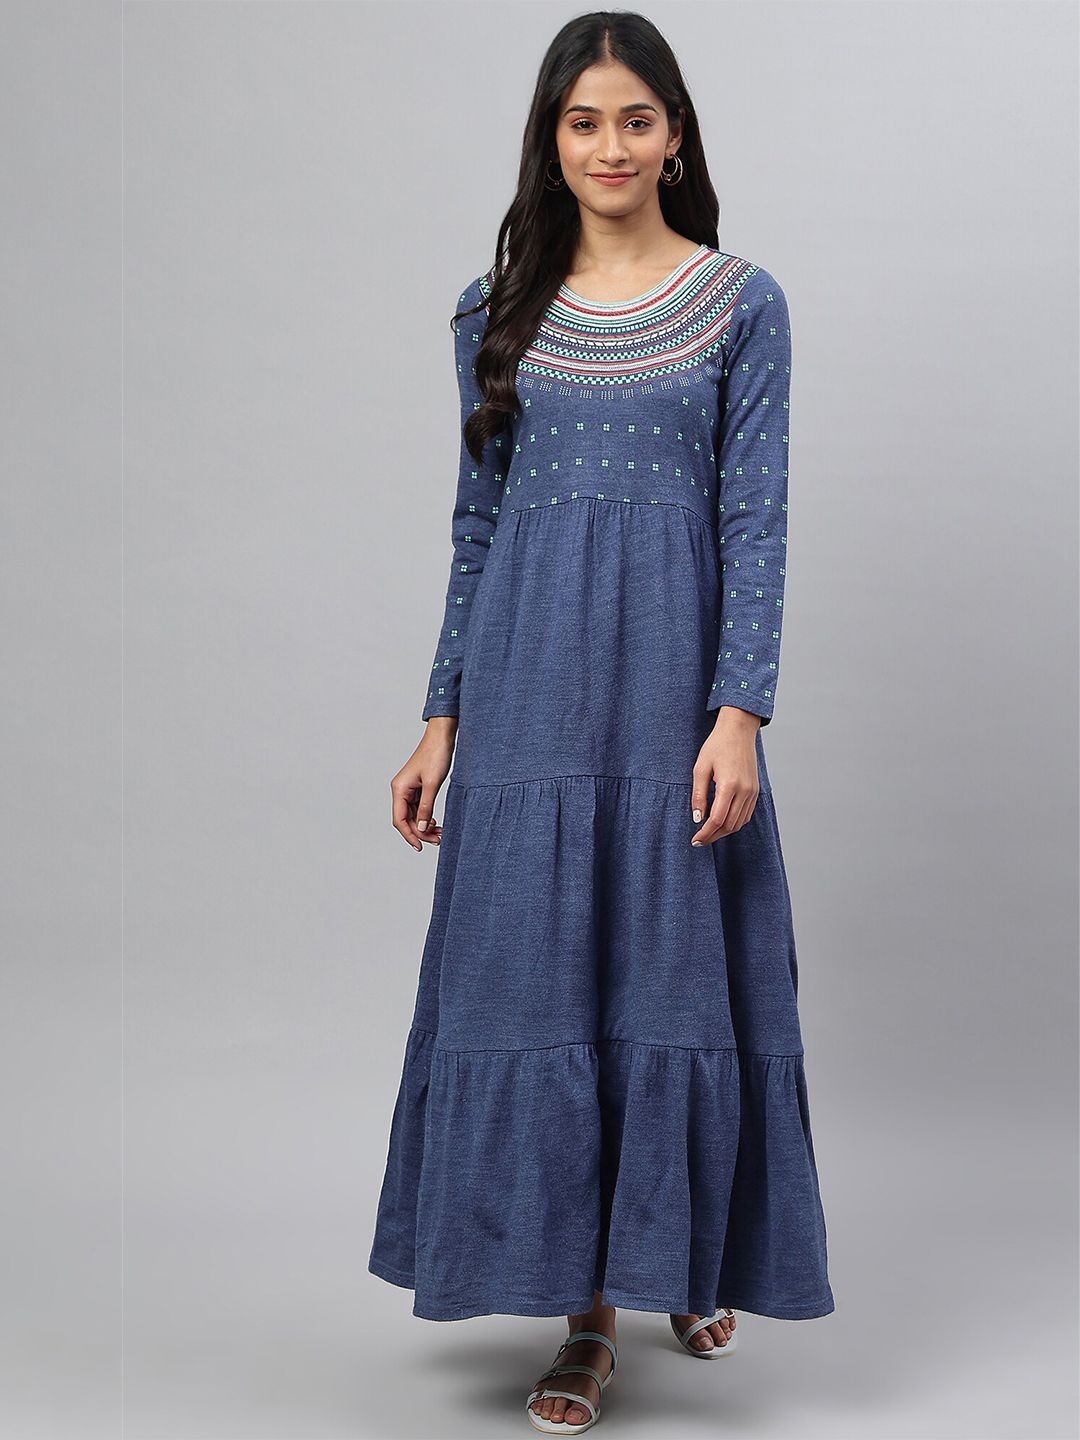 AURELIA Blue Empire Maxi Dress Price in India